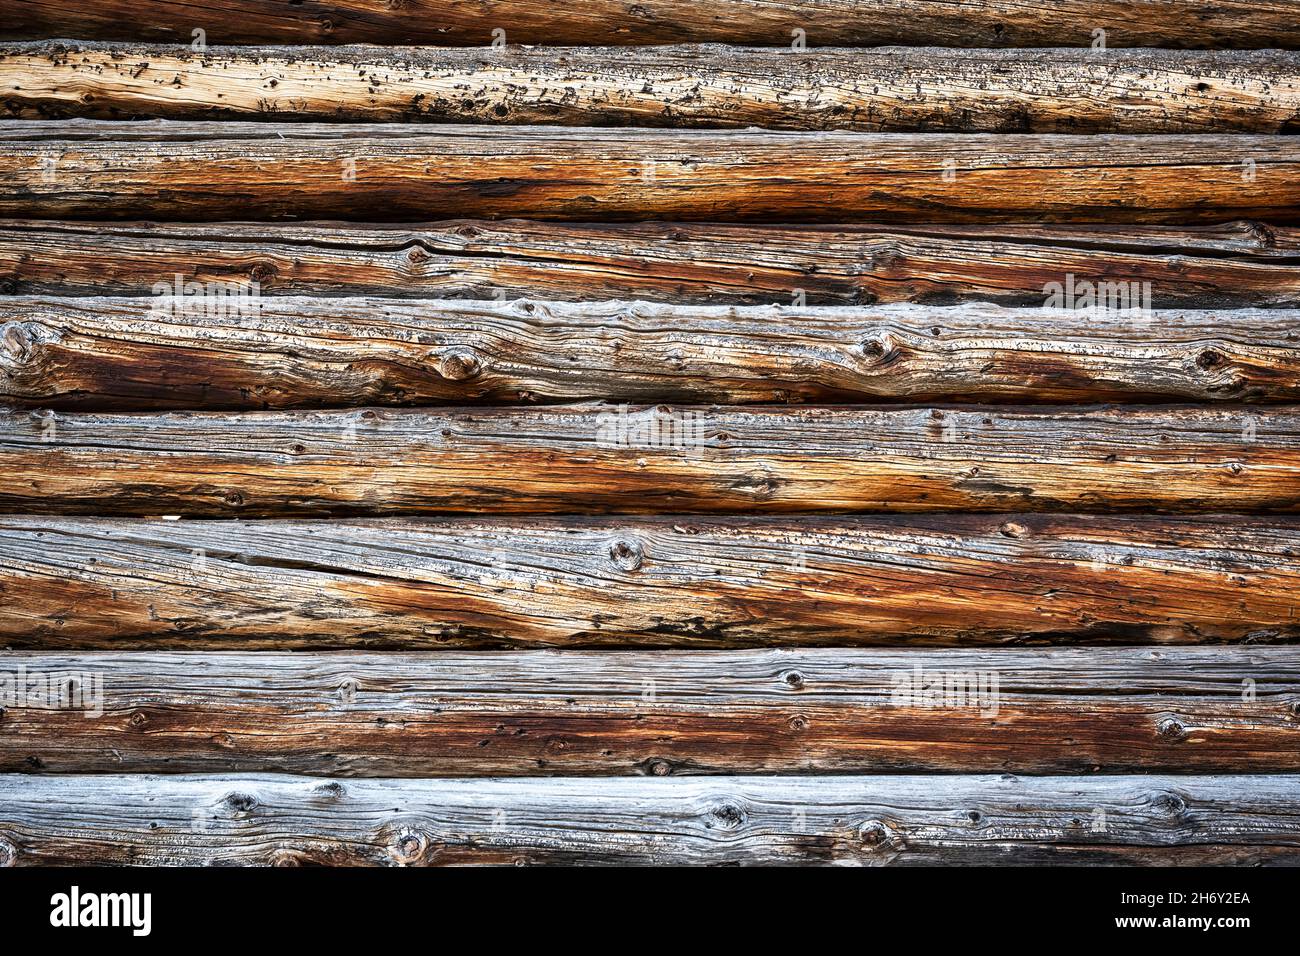 Bức ảnh về đống gỗ sồi cũ được chụp nửa đêm mang đến cái nhìn đầy mysteri và sự u uất. Màu sắc chuyển sang tám màu của gỗ sồi cũ khiến cho người xem không khỏi thích thú và tò mò muốn khám phá hơn về đống gỗ này.